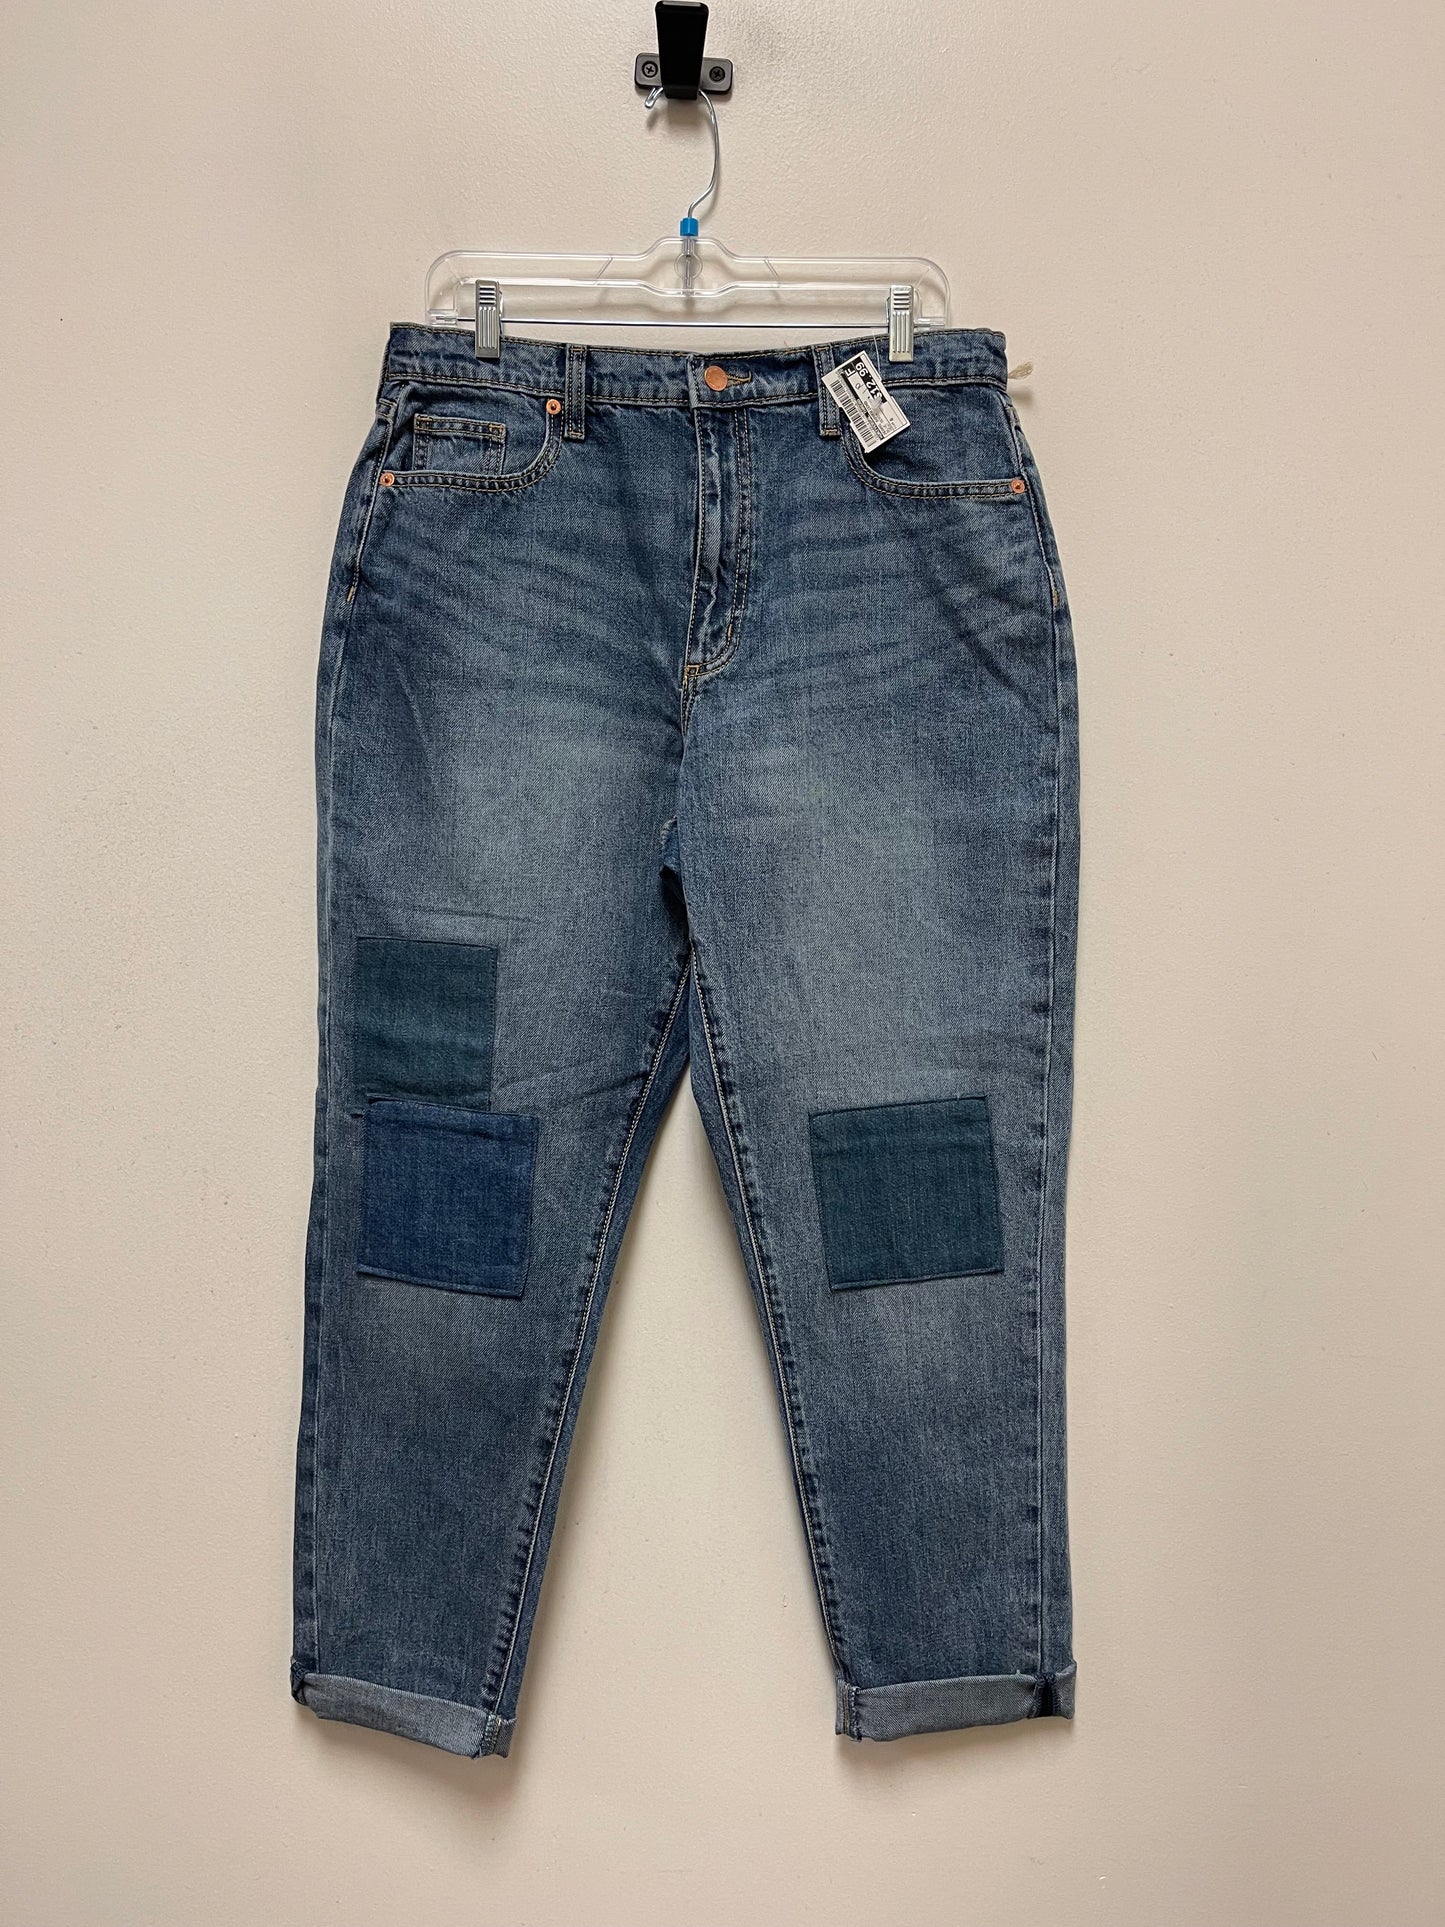 Blue Denim Jeans Boyfriend Universal Thread, Size 8